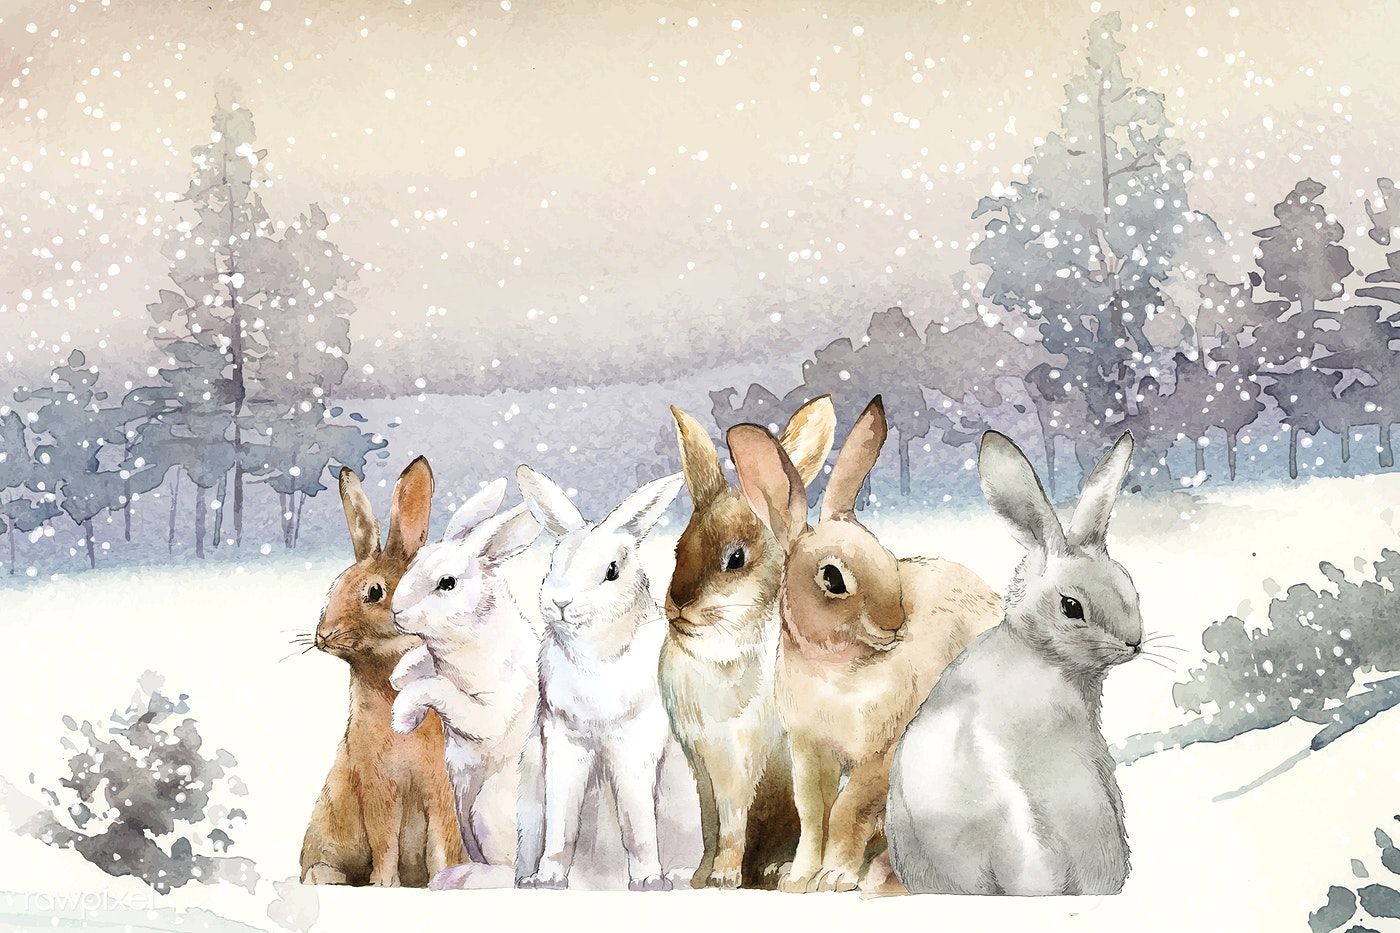 Snow bunny's Christmas wish / Ð¡Ð¾Ð±Ñ‹Ñ‚Ð¸Ñ� Ð½Ð° TimePad.ru.